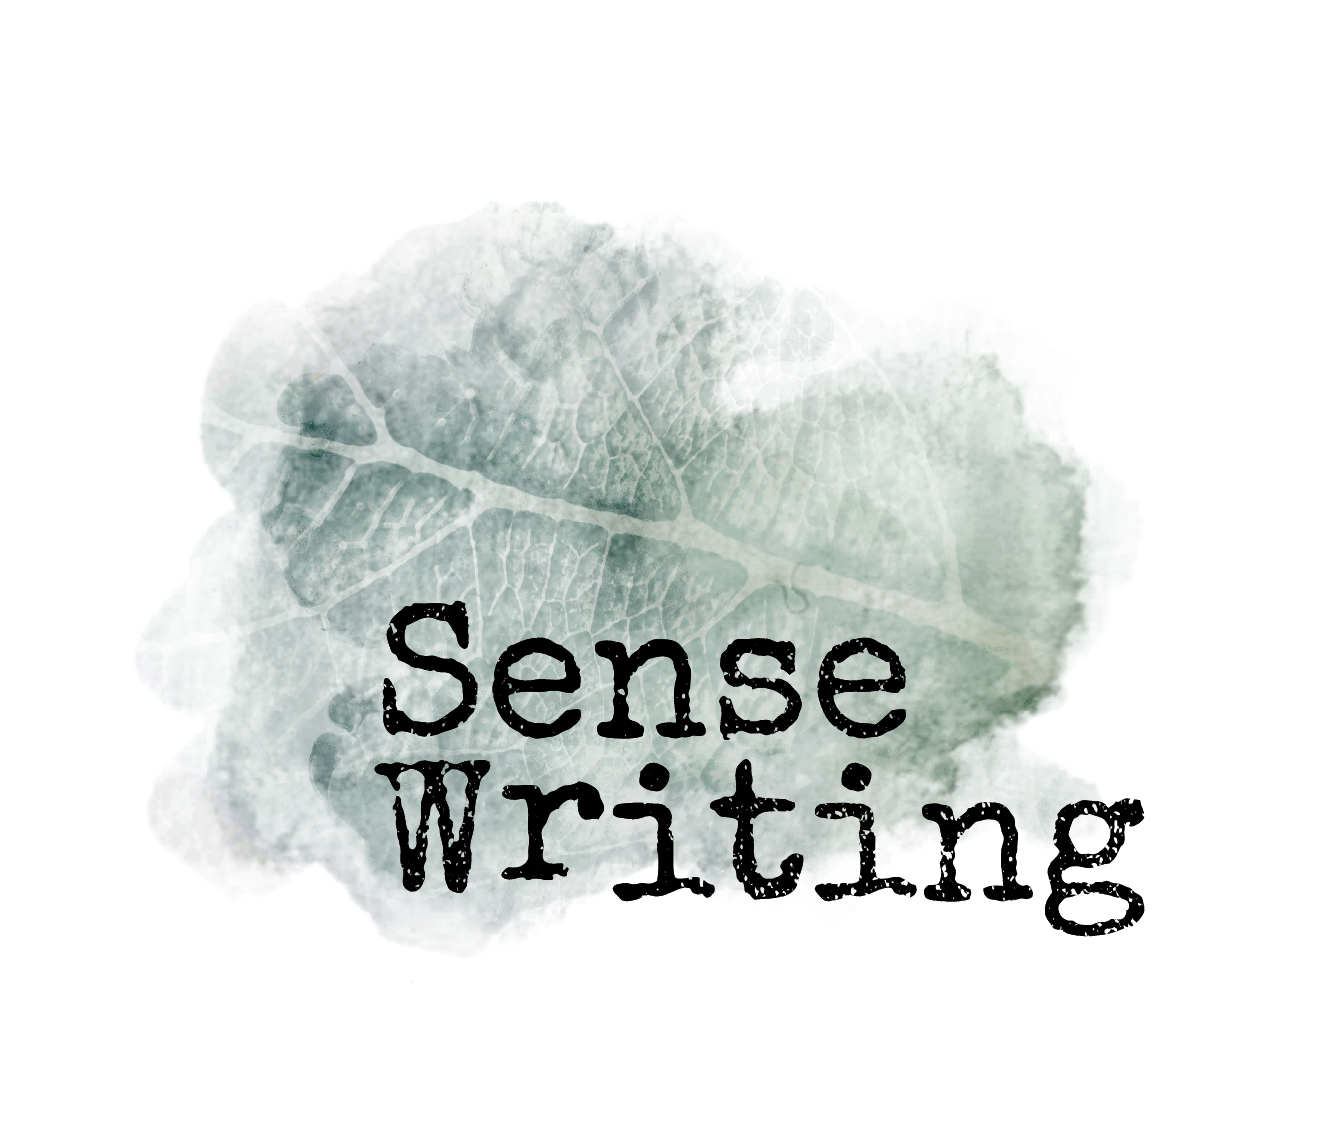 Sense Writing